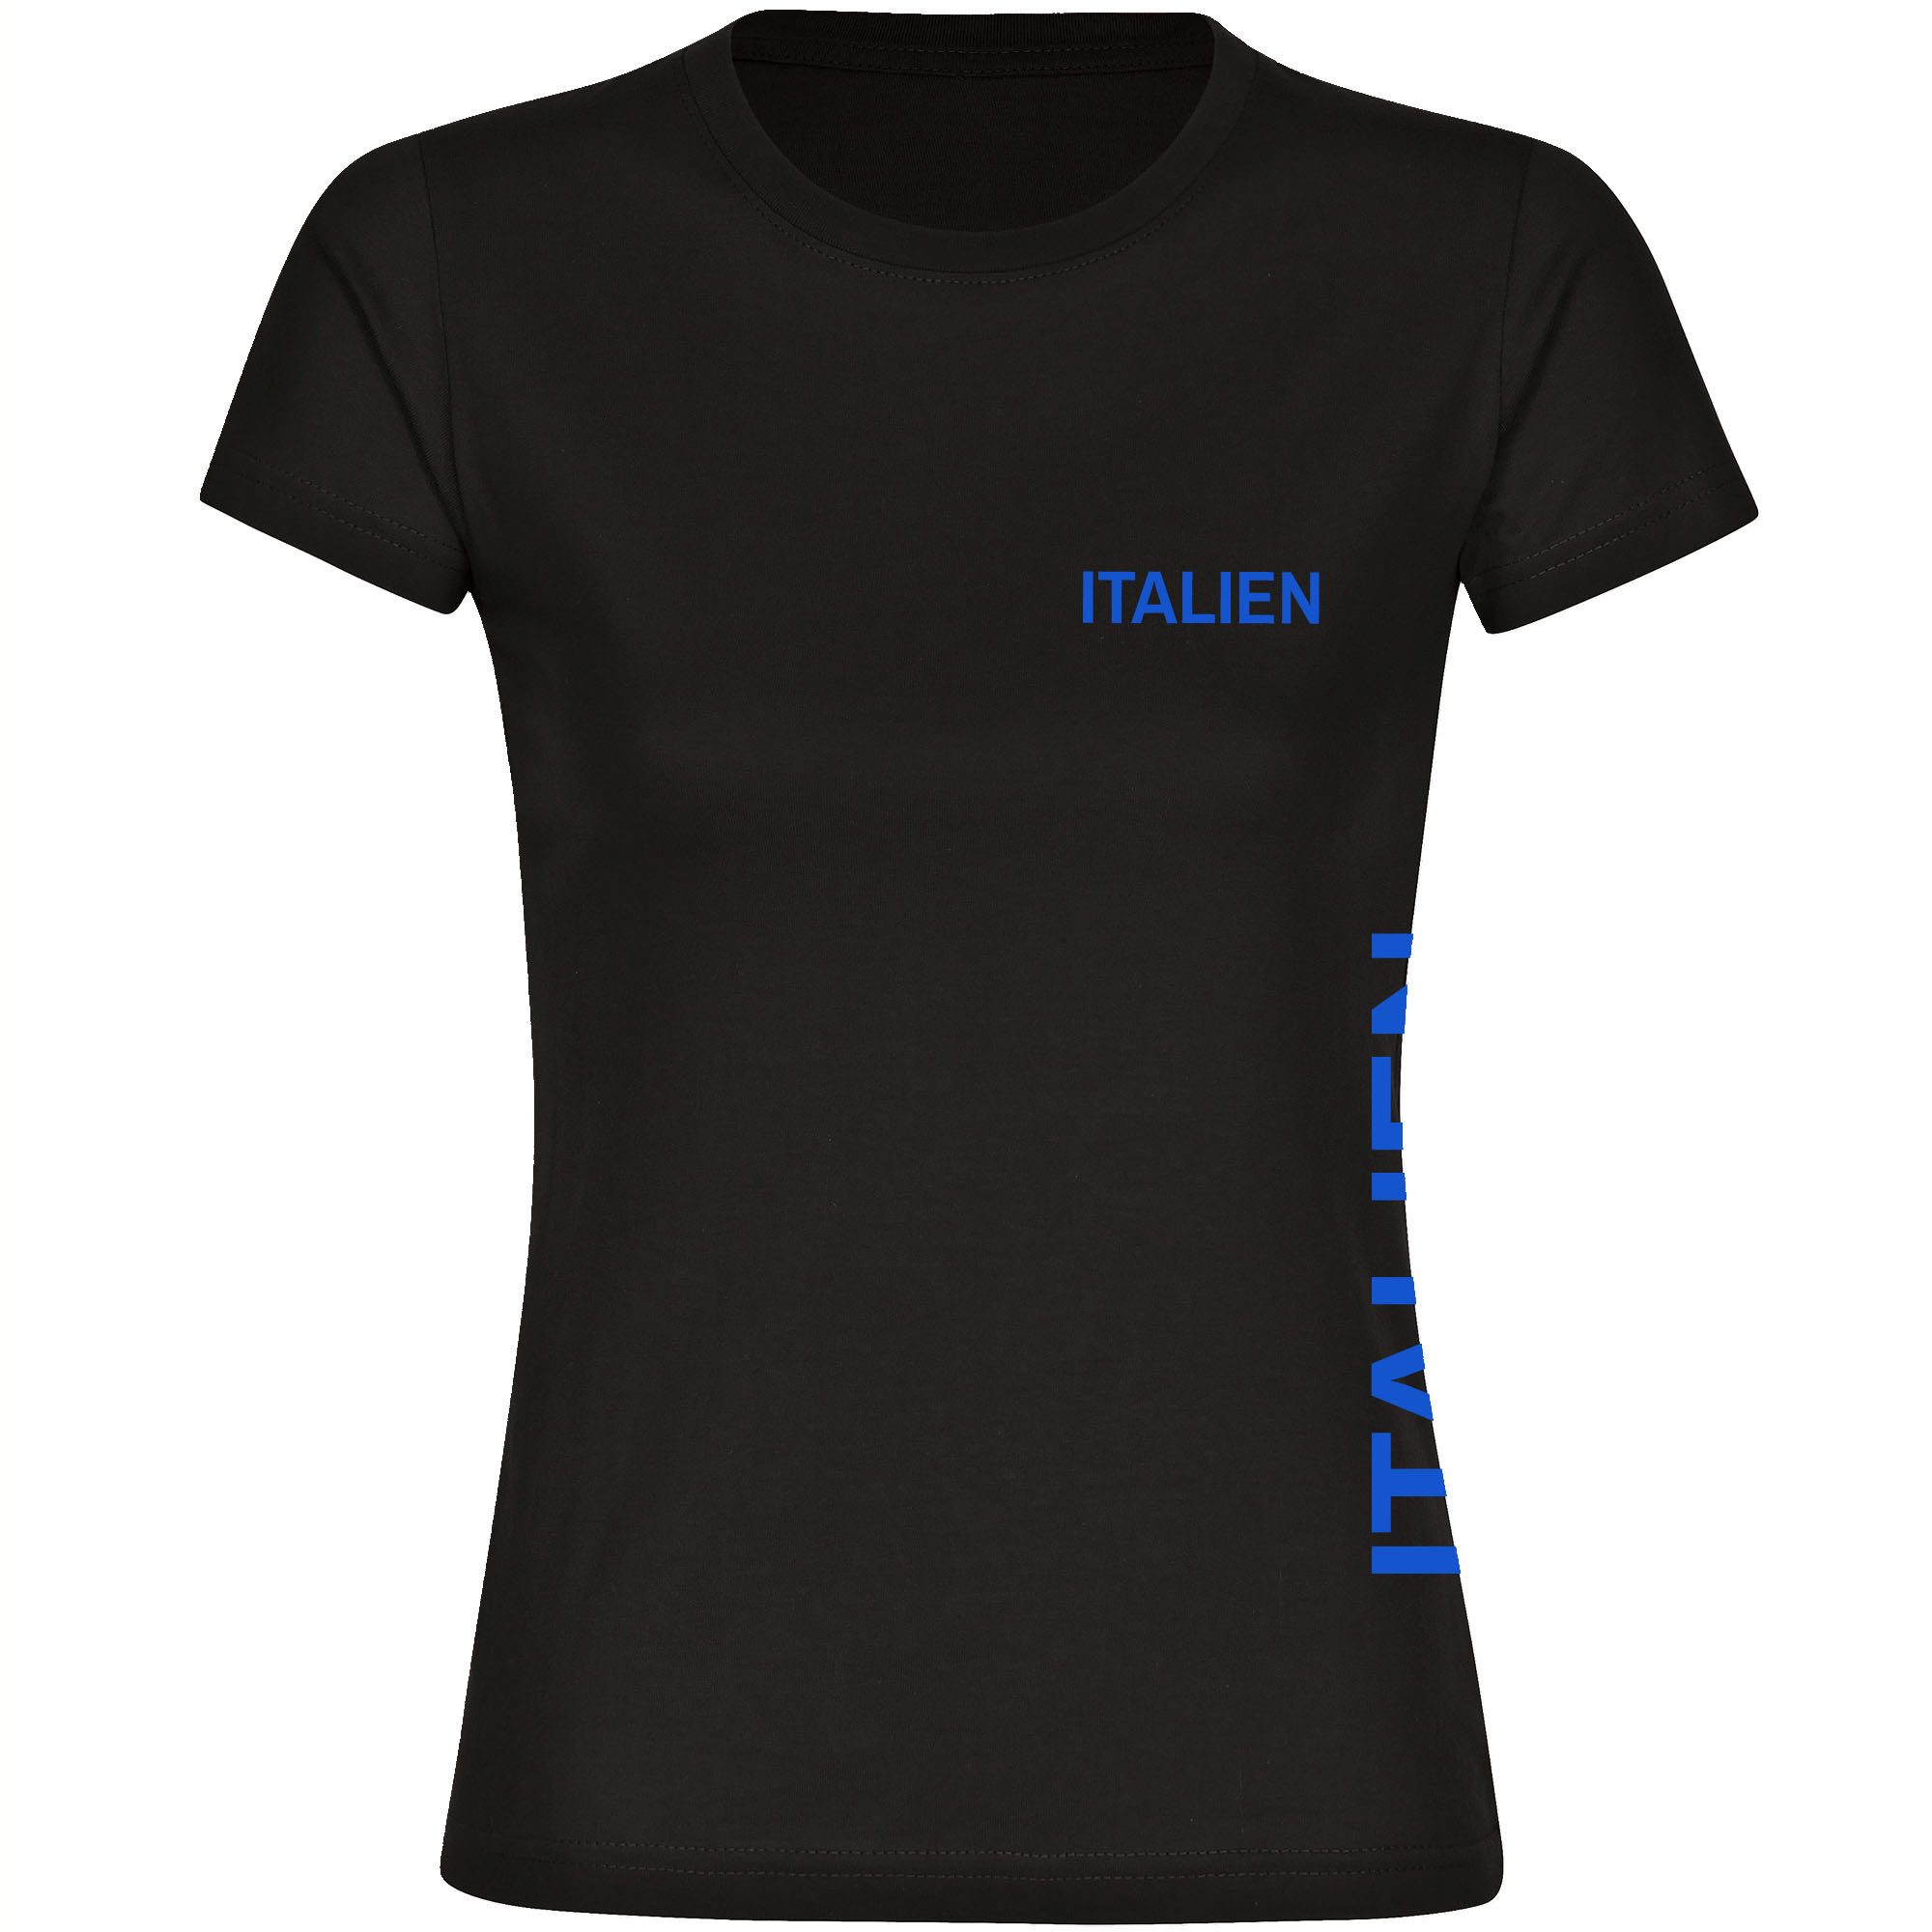 multifanshop T-Shirt Damen Italien - Brust & Seite - Frauen